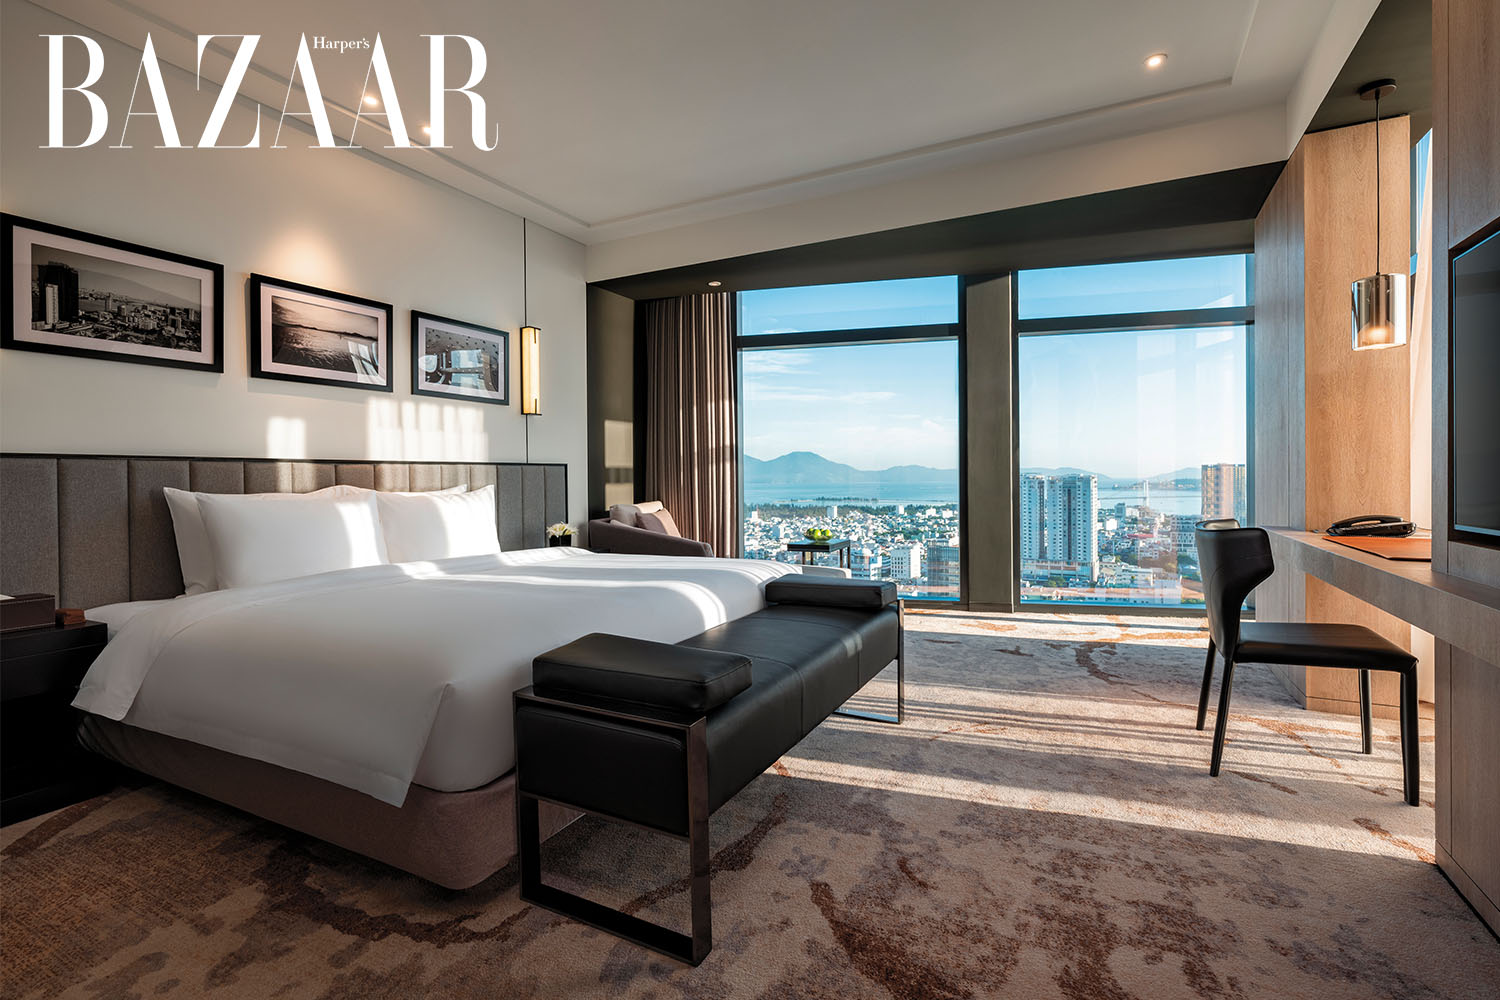 Harper's Bazaar_Khách sạn Bay Capital Da Nang nghỉ dưỡng quiet luxury_04